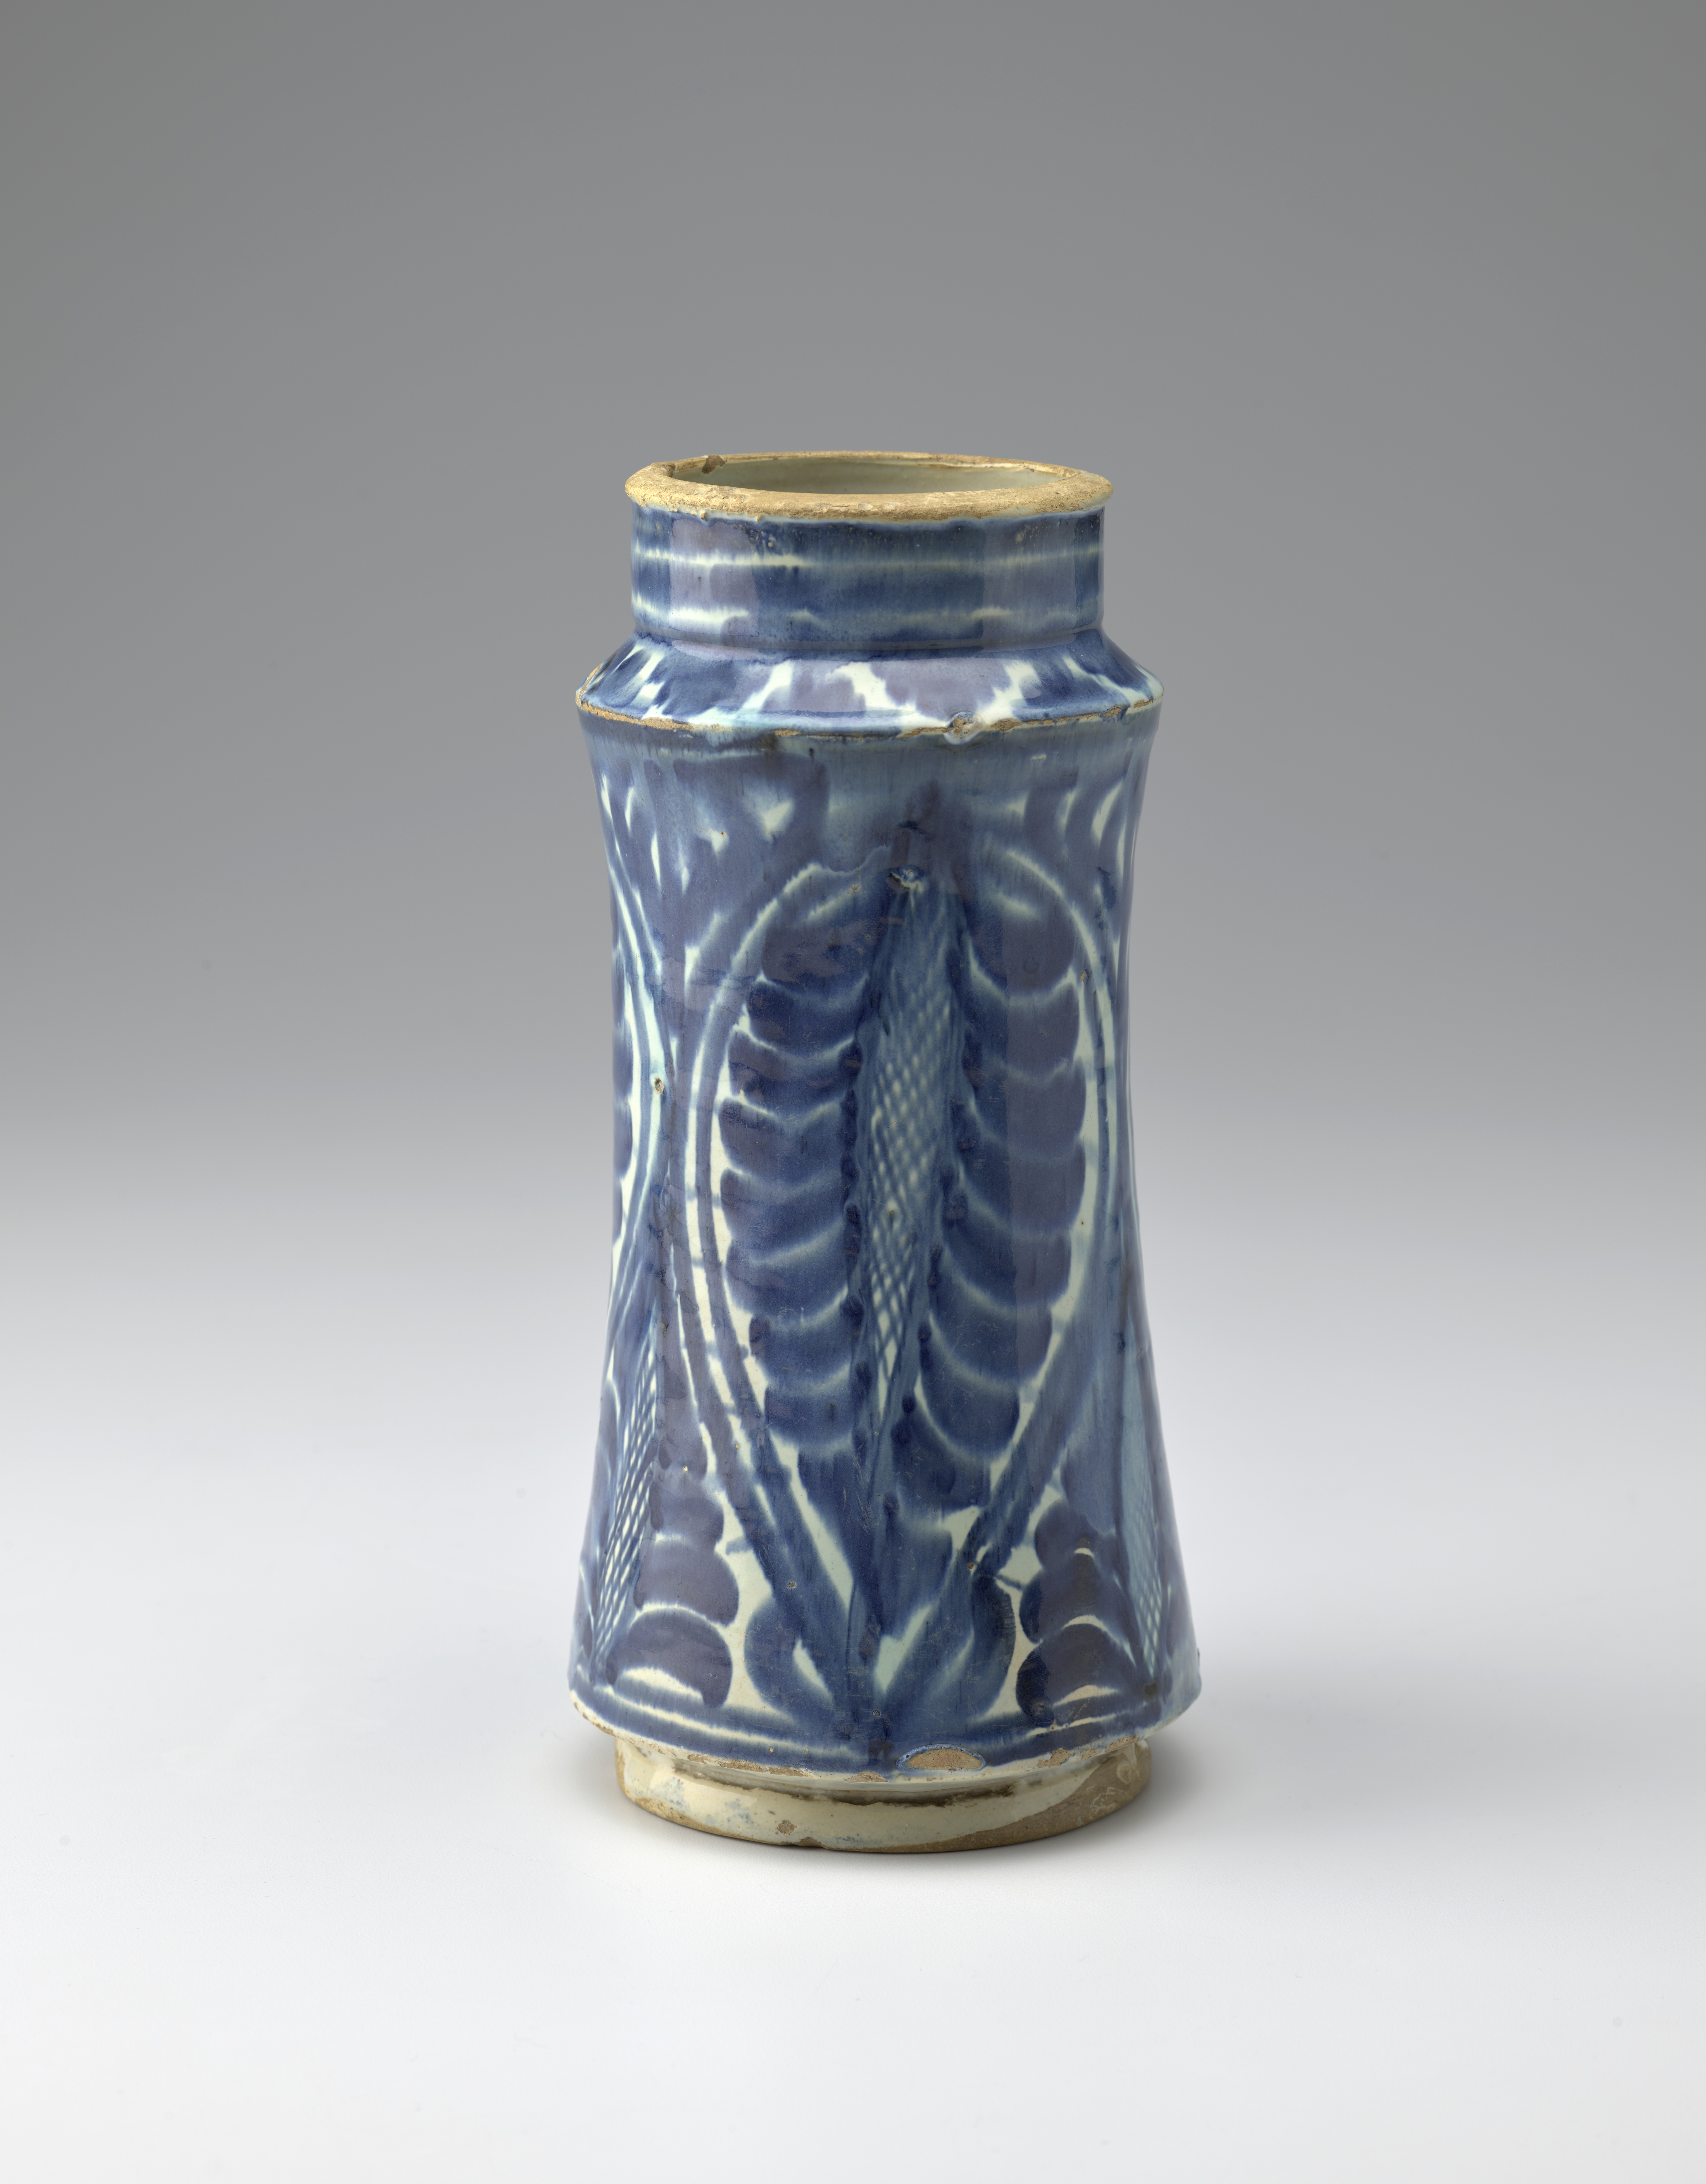 Jarra de cerámica azul y blanca decorada con un diseño de ramas de palmera.